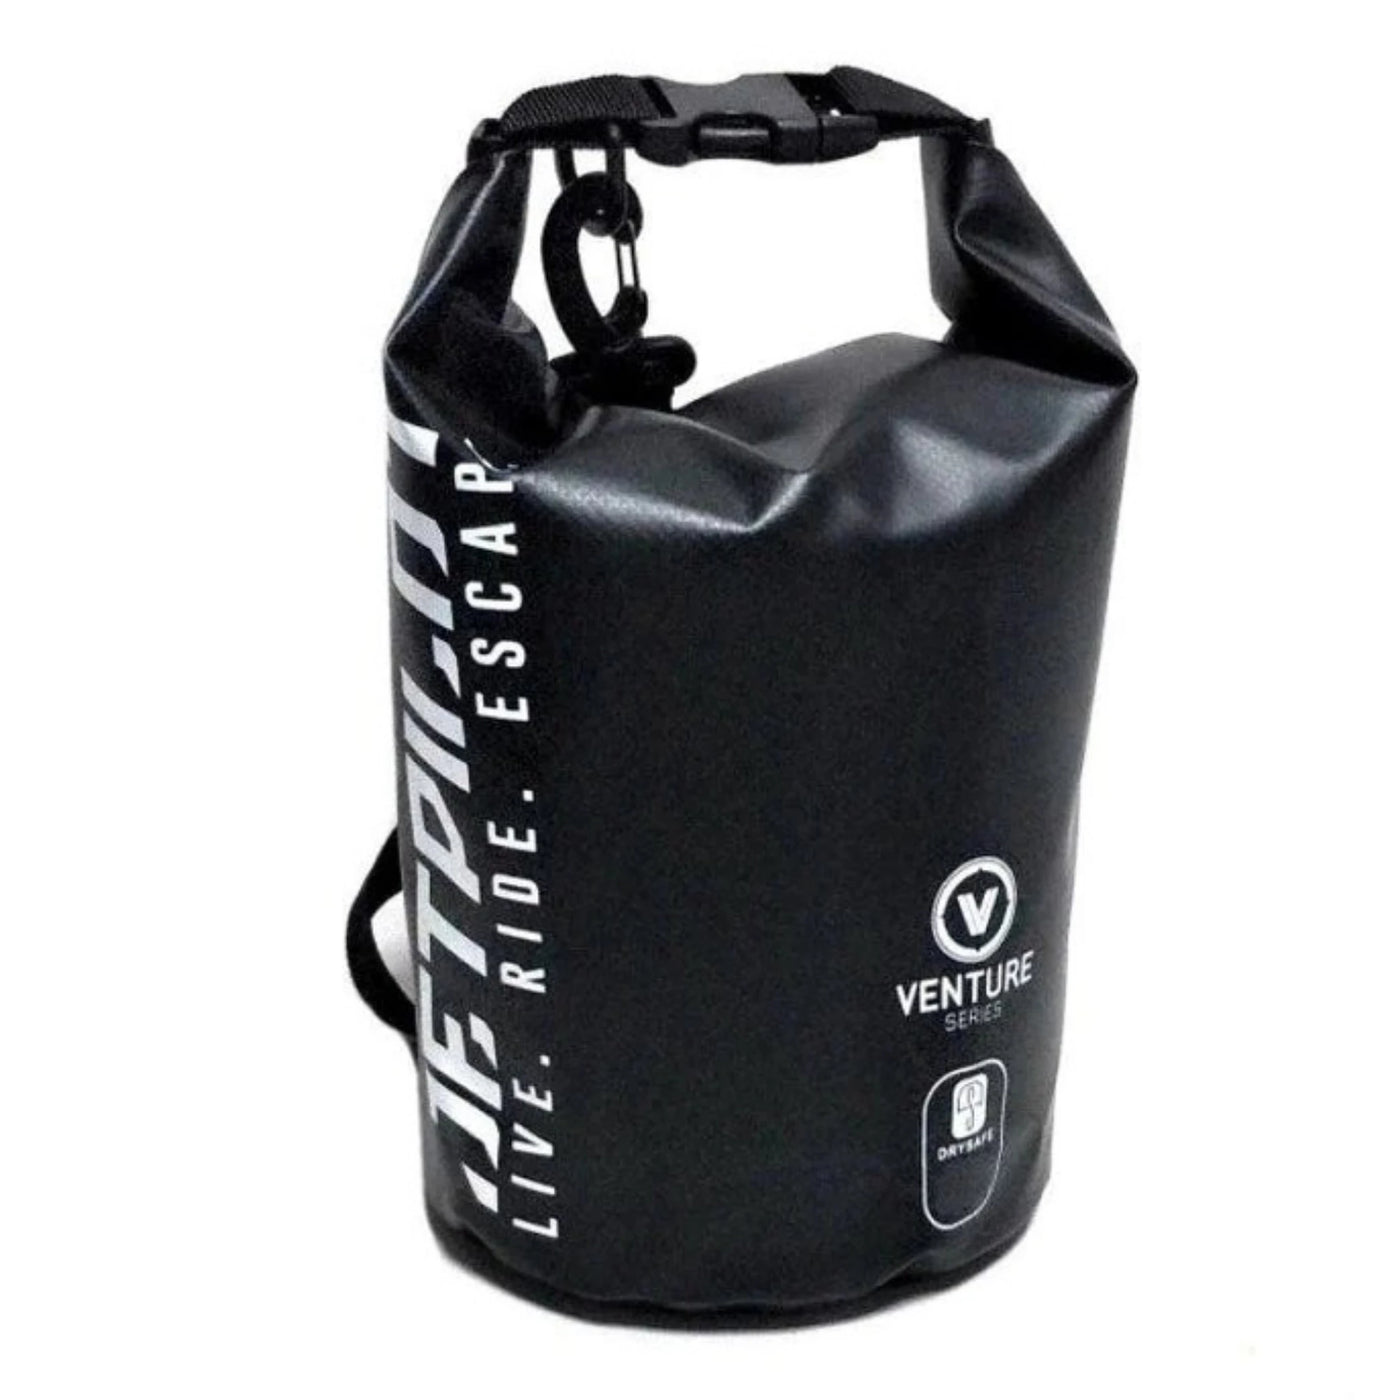 Jetpilot Venture 5L Drysafe Bag